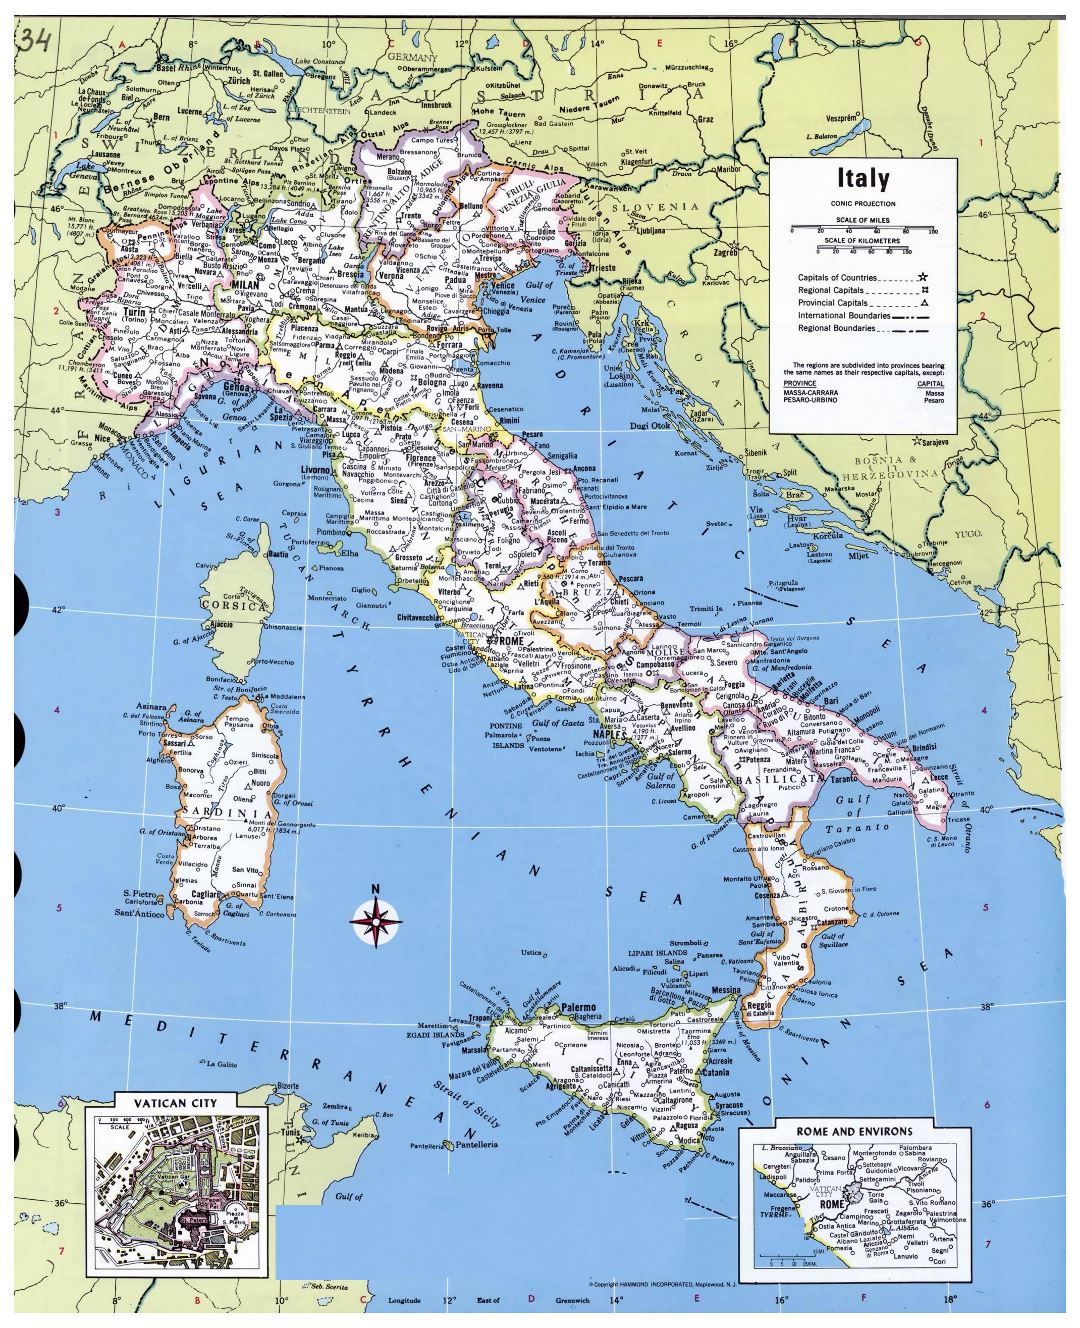 Mapa político y administrativo detallada grande de Italia, con las principales ciudades